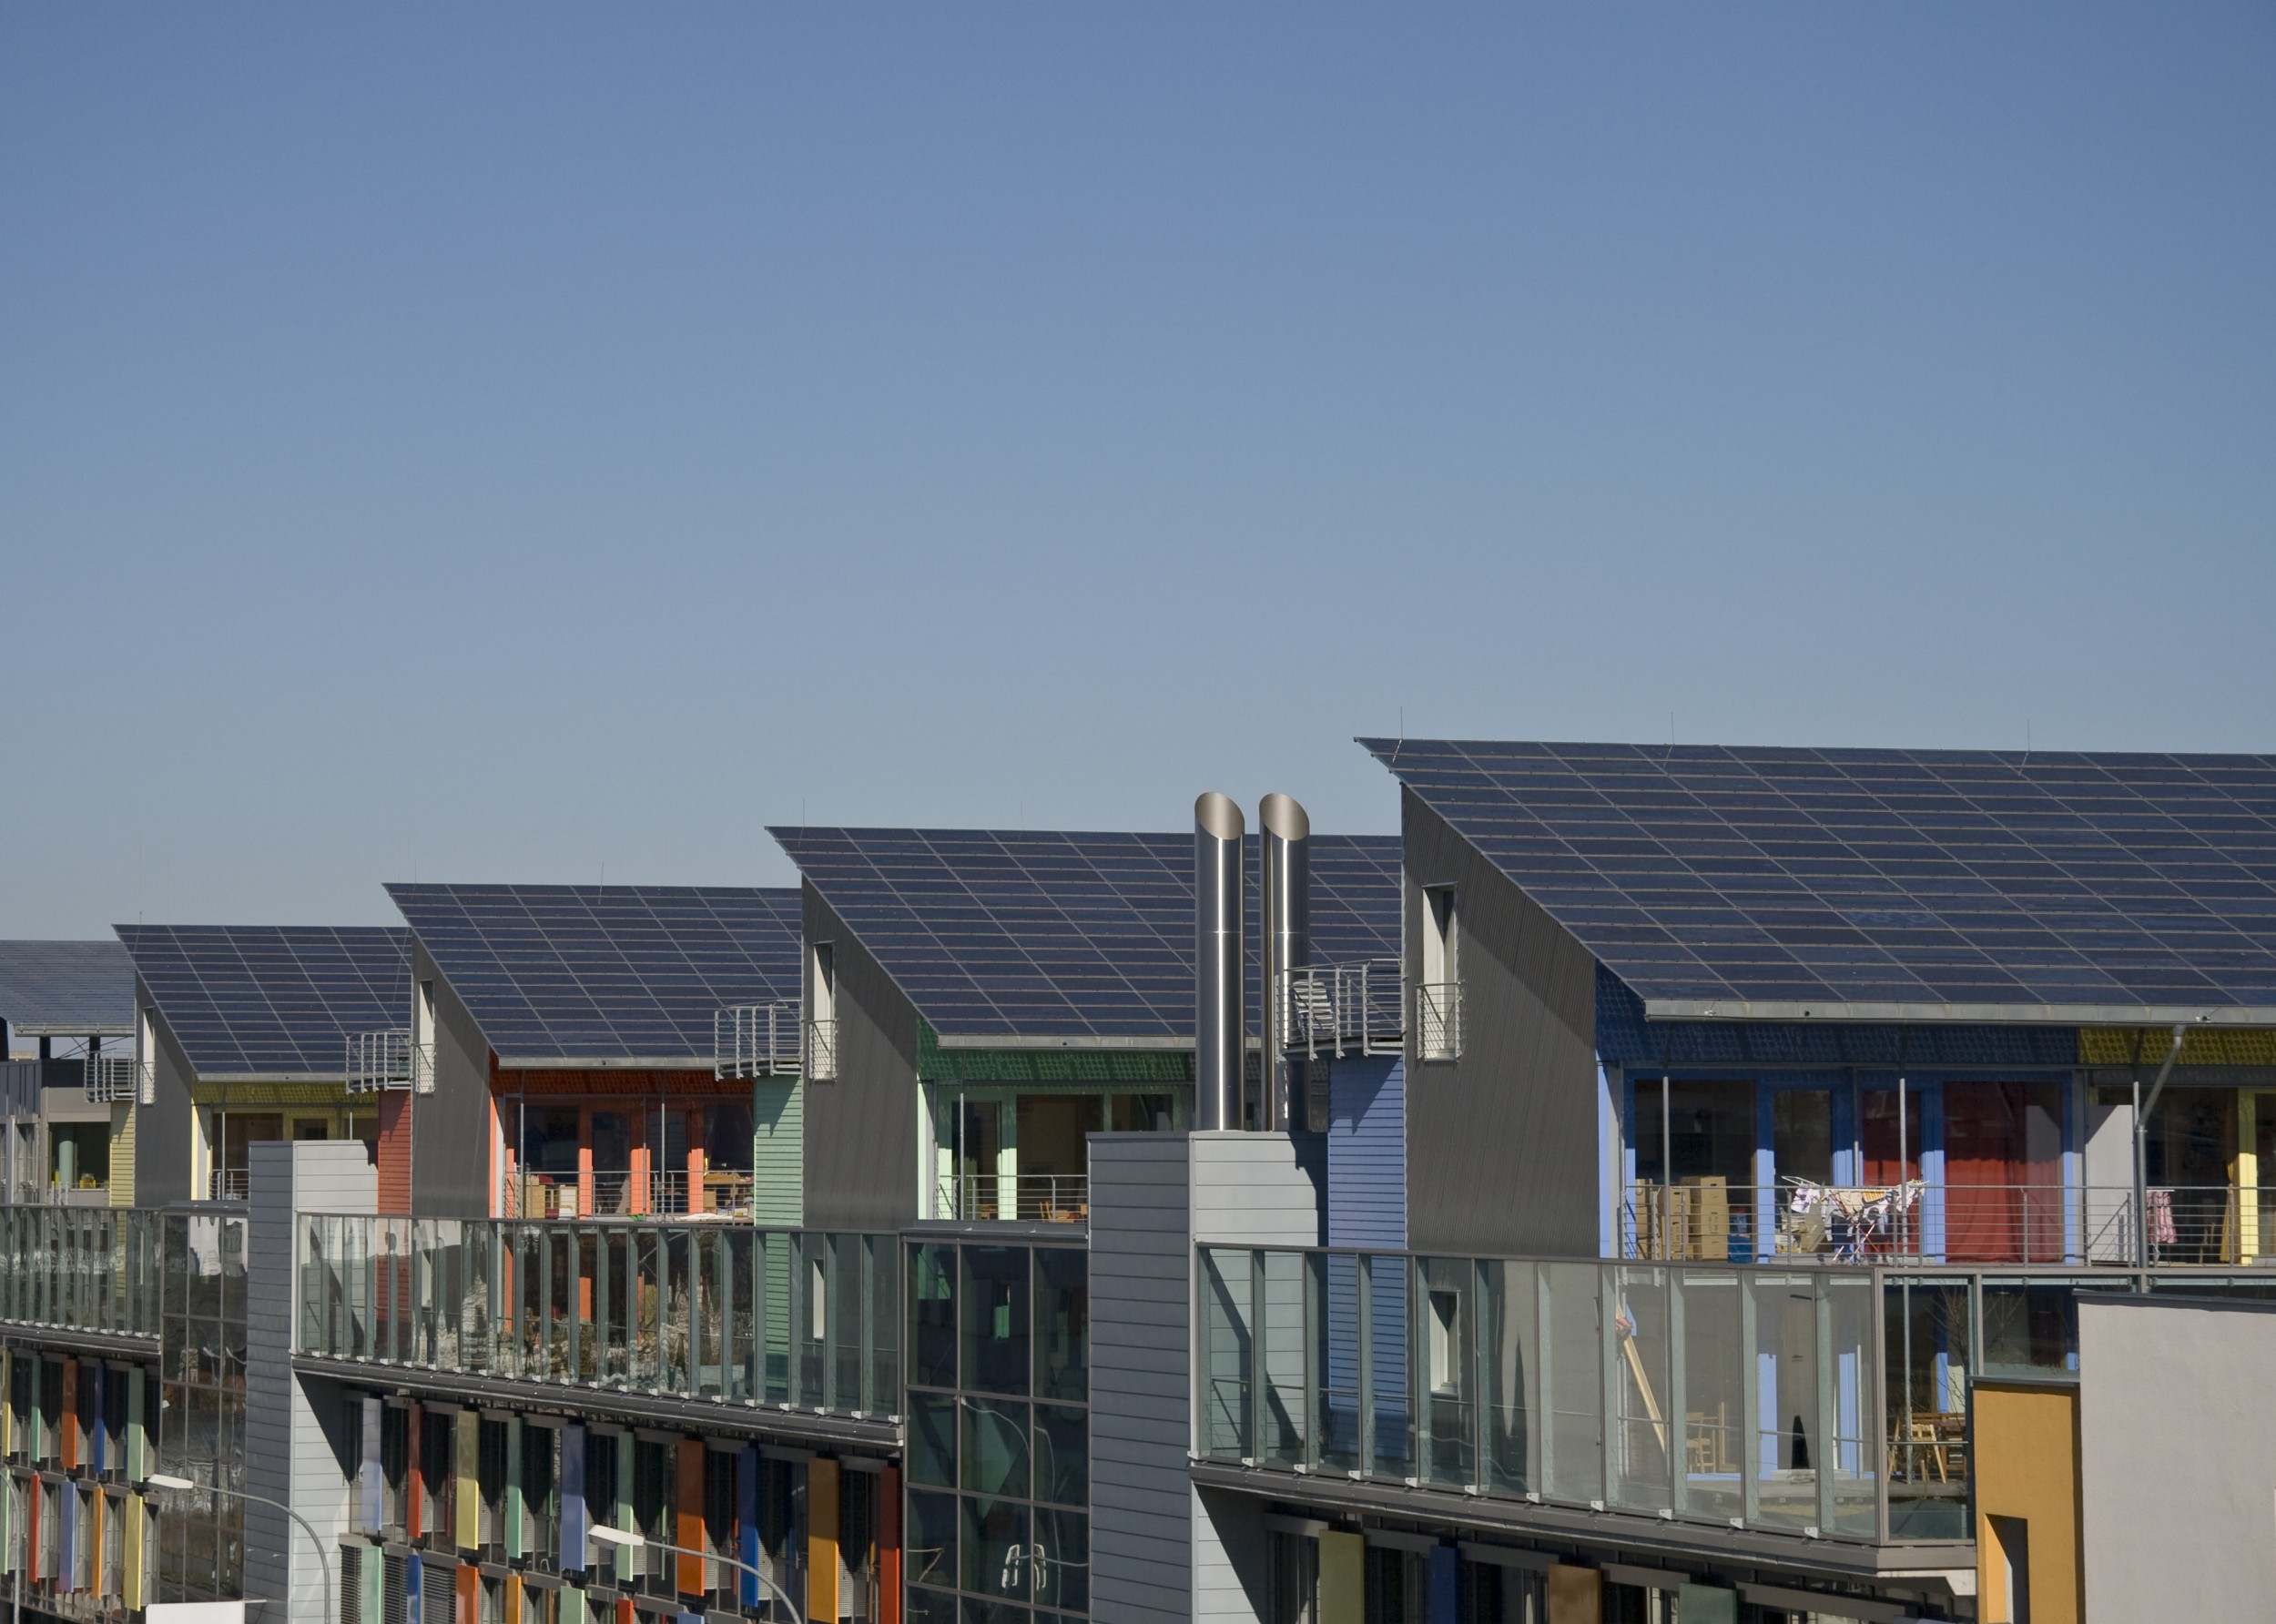 A l'avenir, les quartiers pourraient produire et gérer eux-mêmes leur énergie moyennant des systèmes photovoltaïques et autres centrales électriques décentralisées.